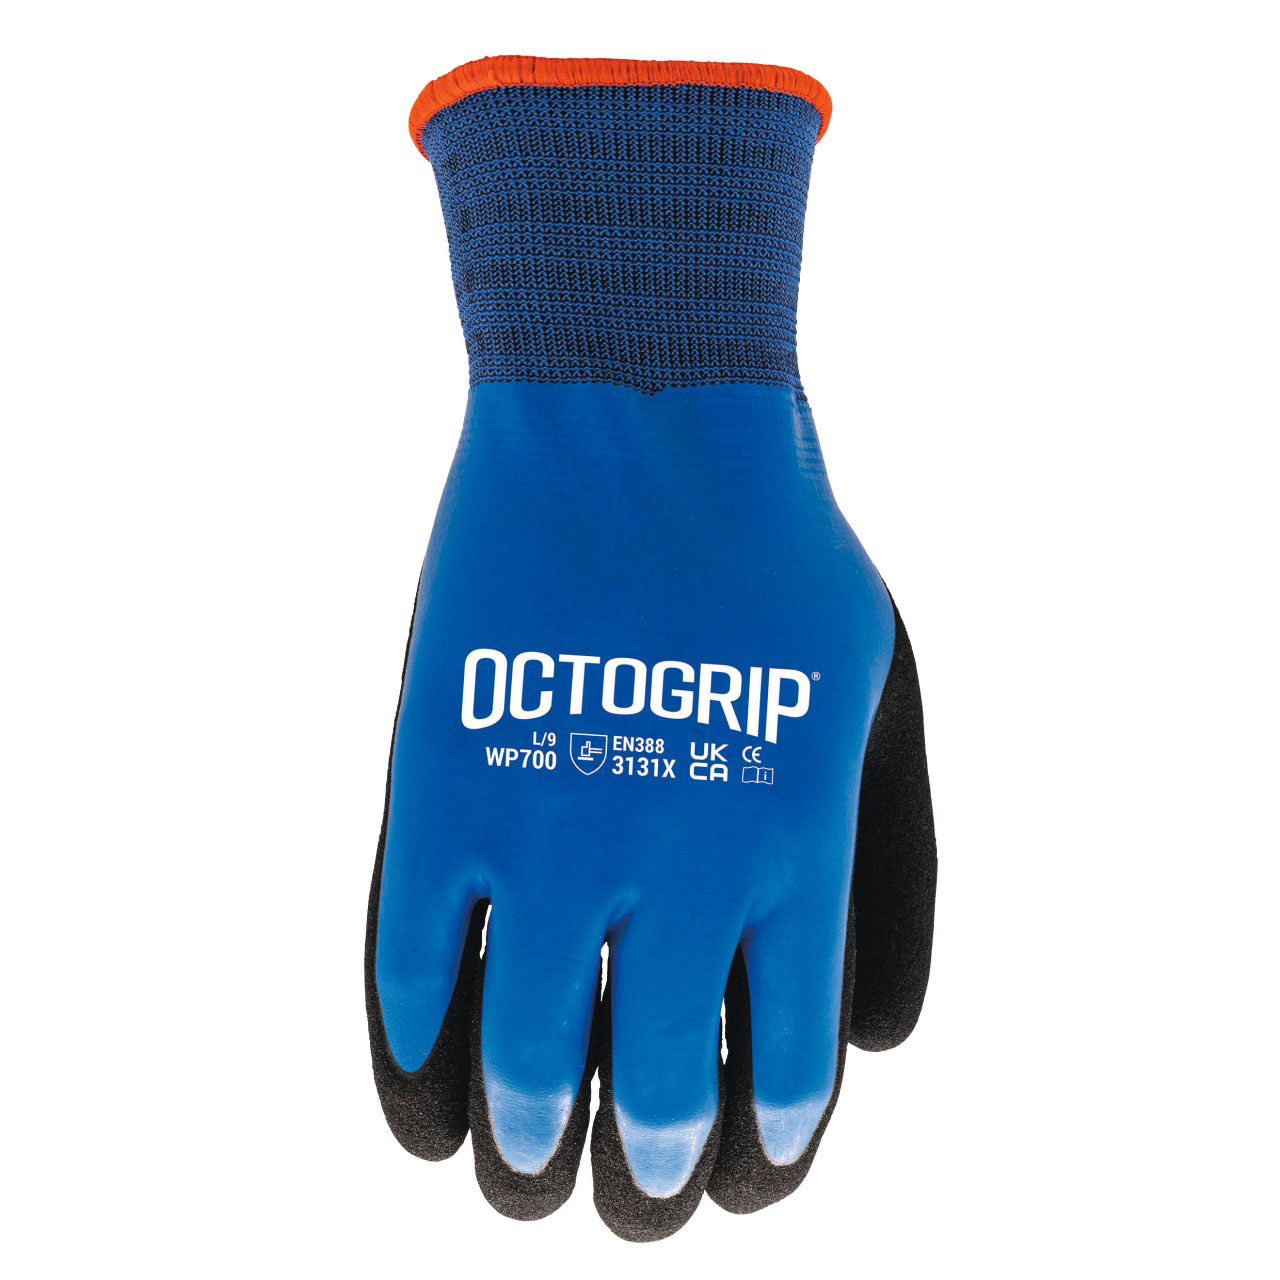 OctoGripT Waterproof Gloves